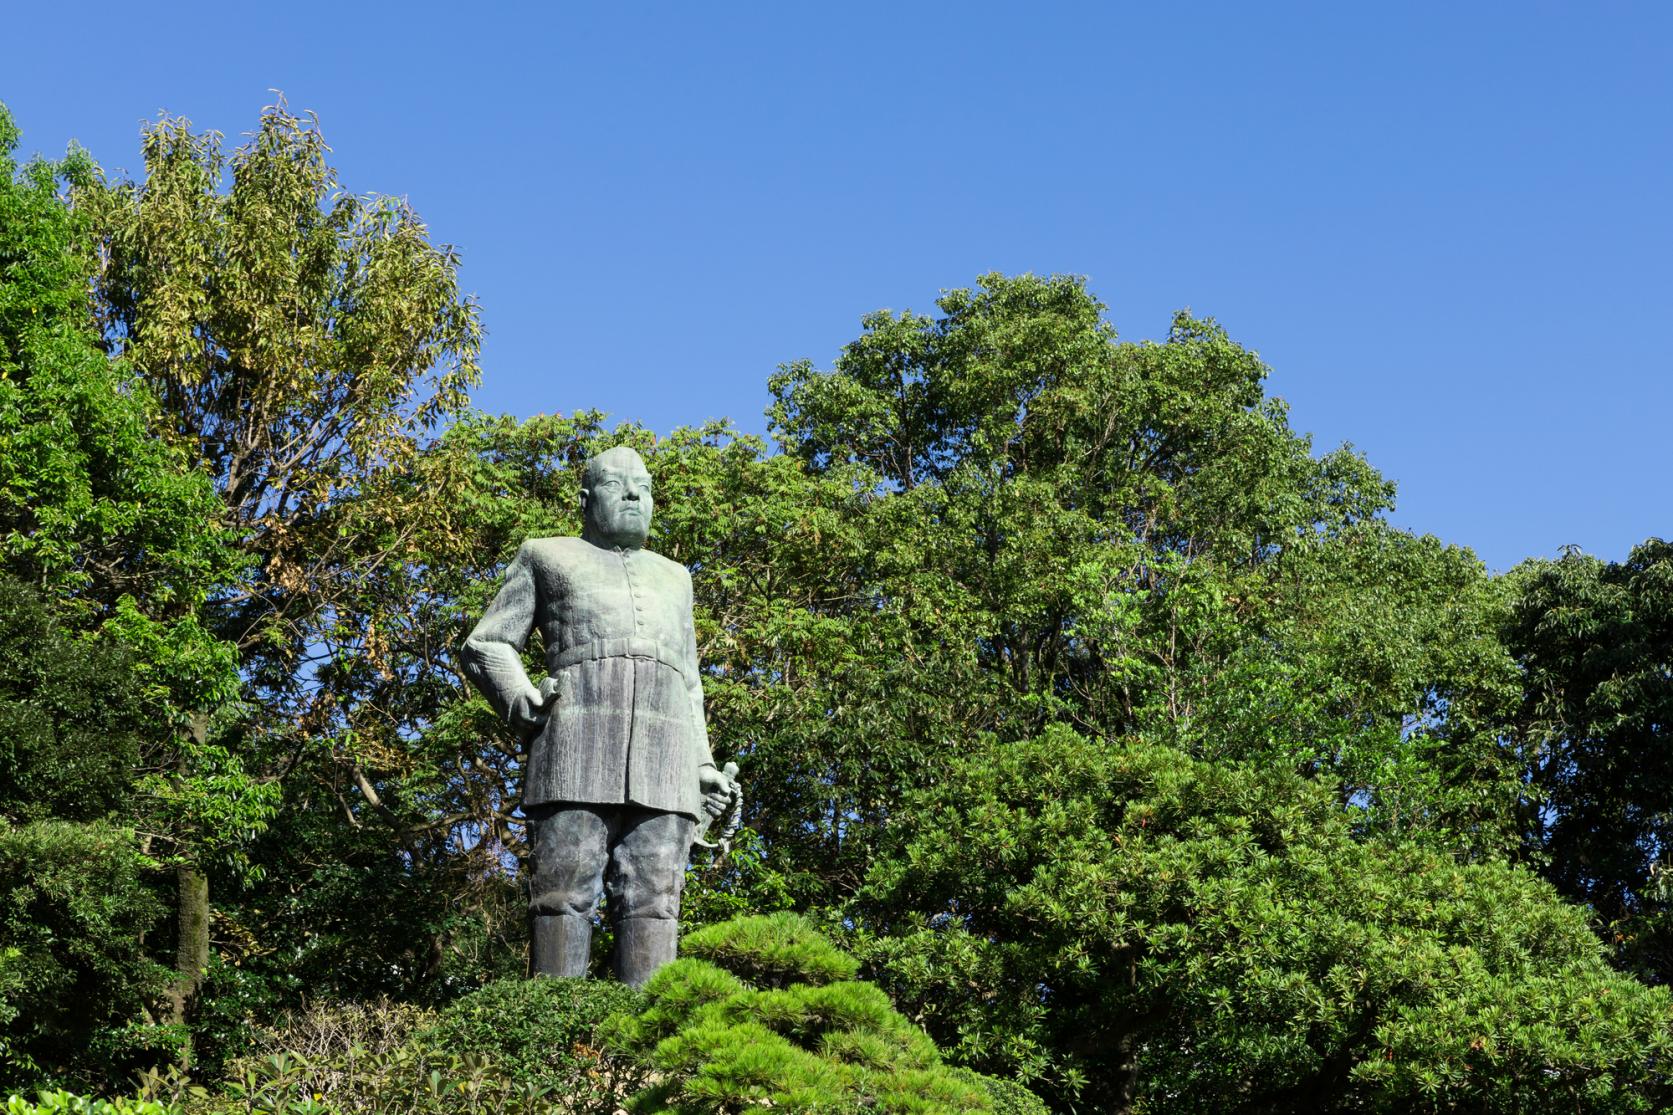  【1日目】西郷隆盛銅像 